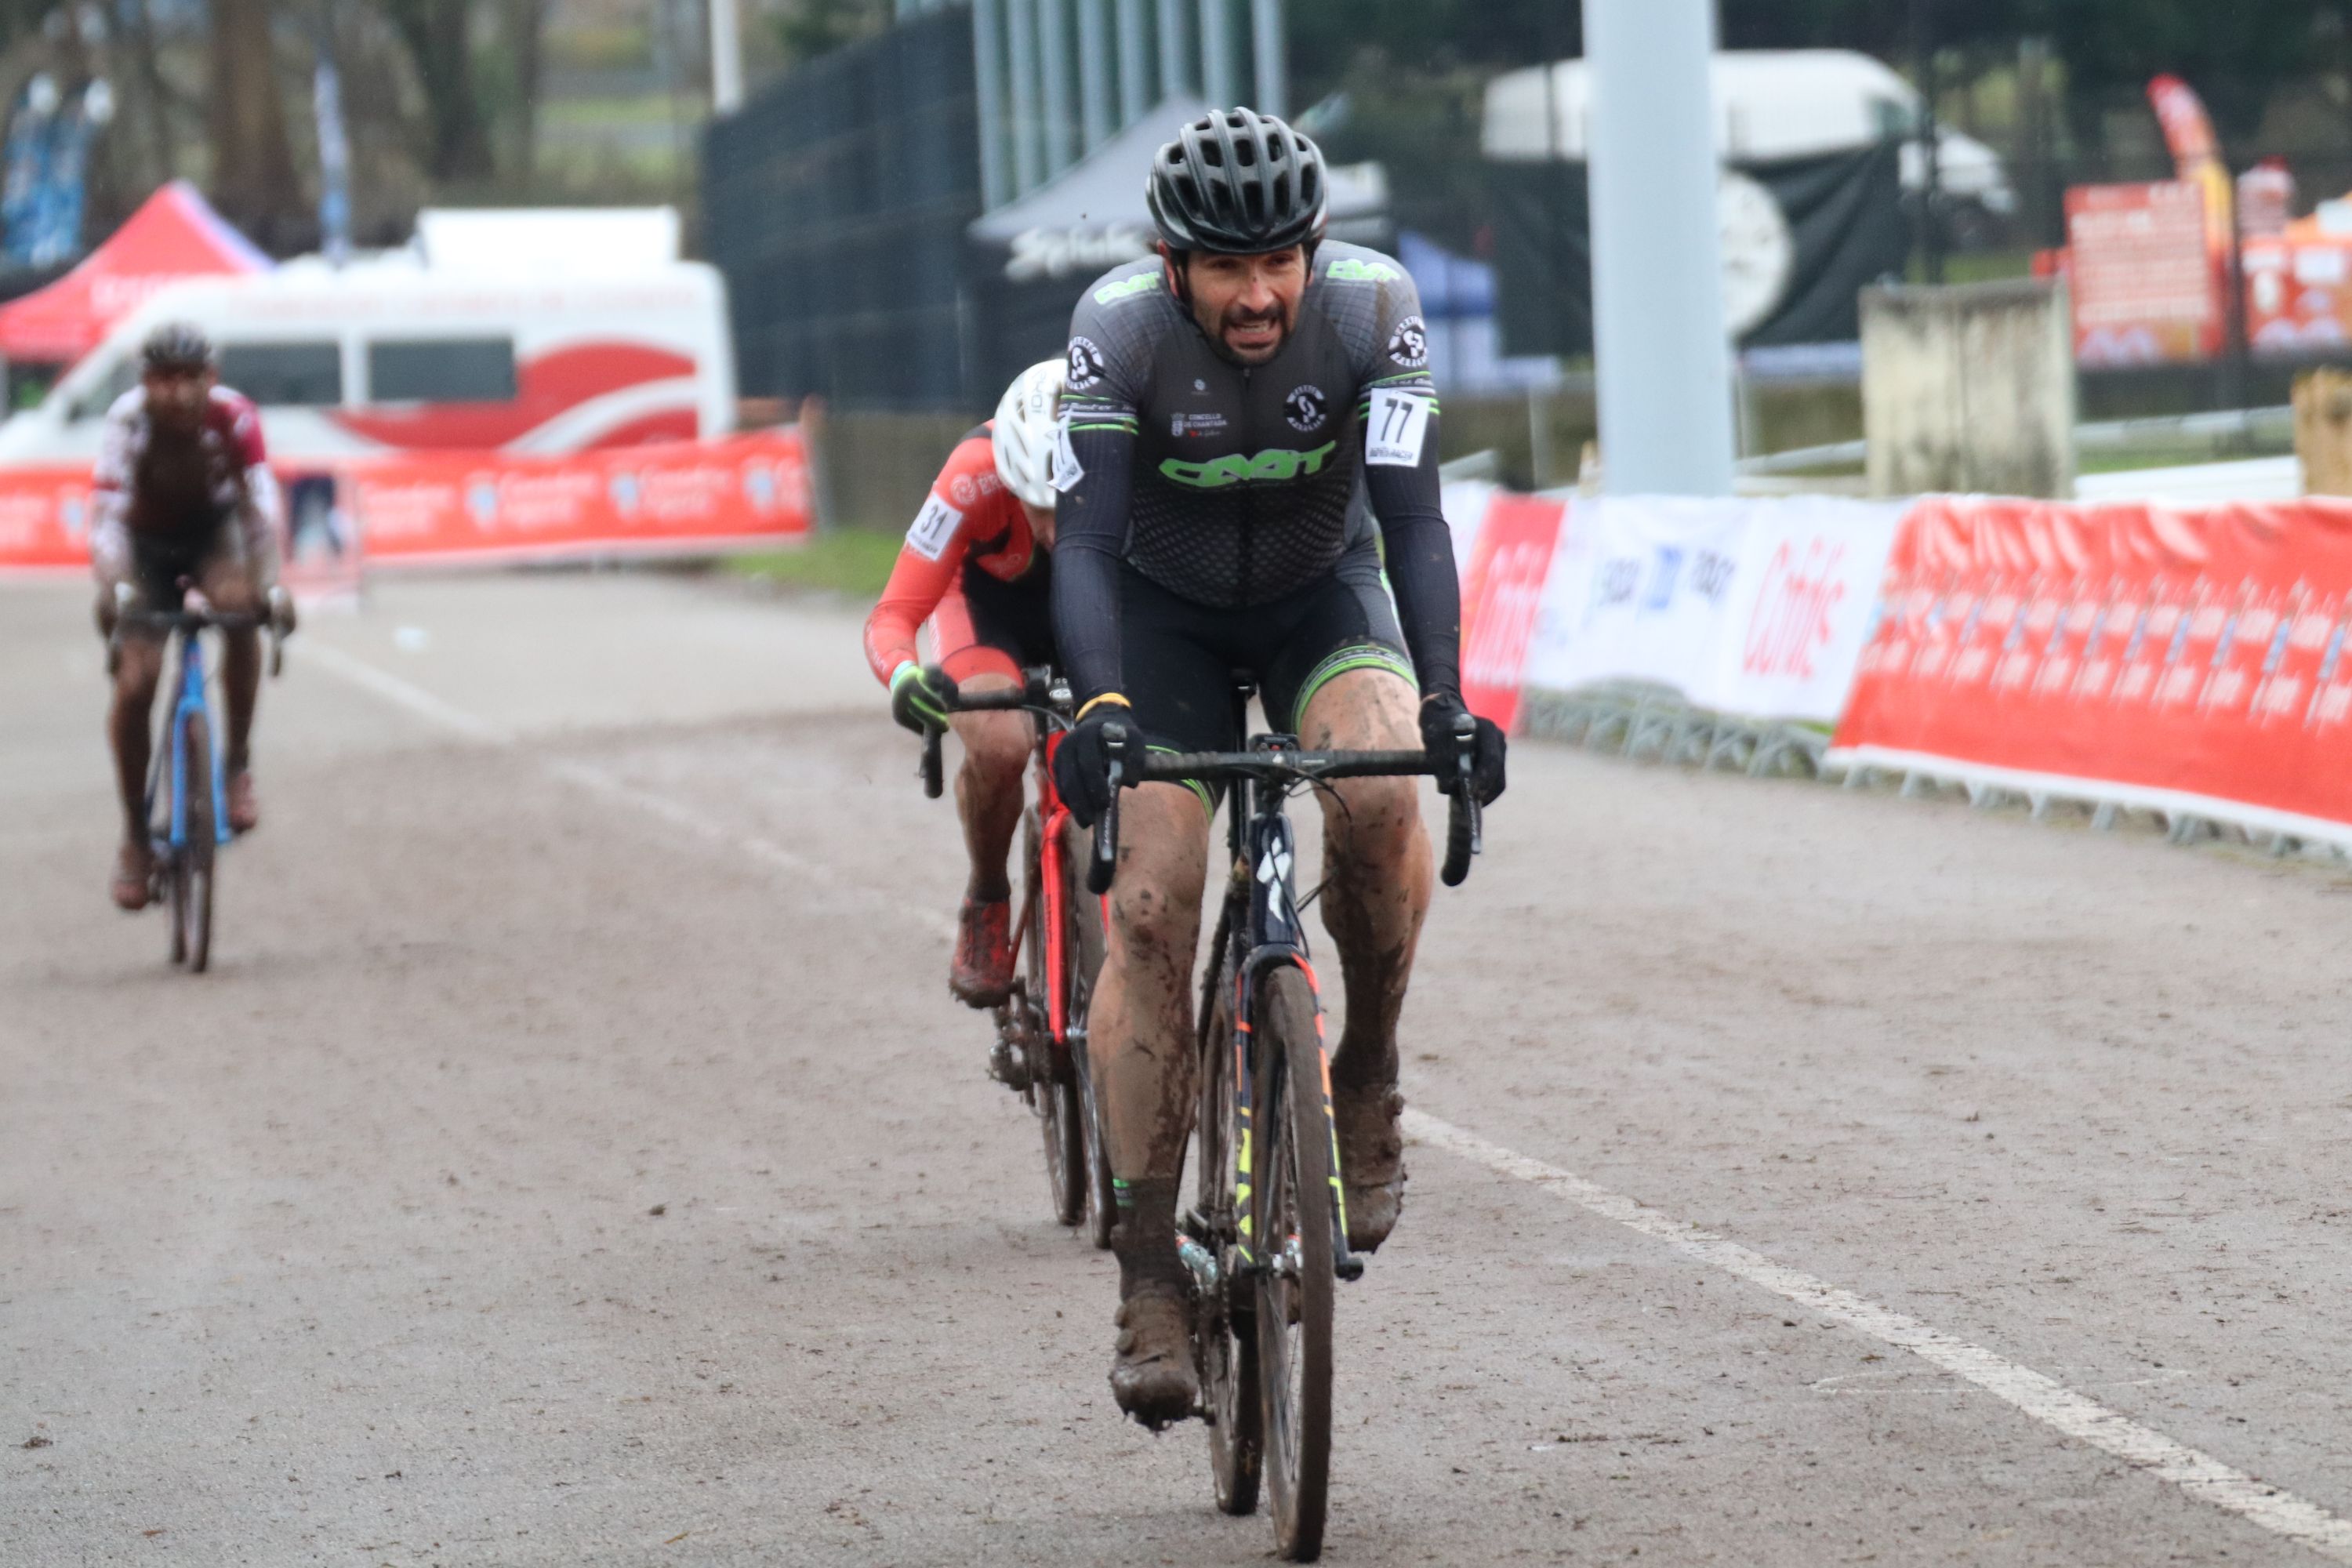 Os masters suman dous bronces ao botín do ciclocrós galego no Campionato de España